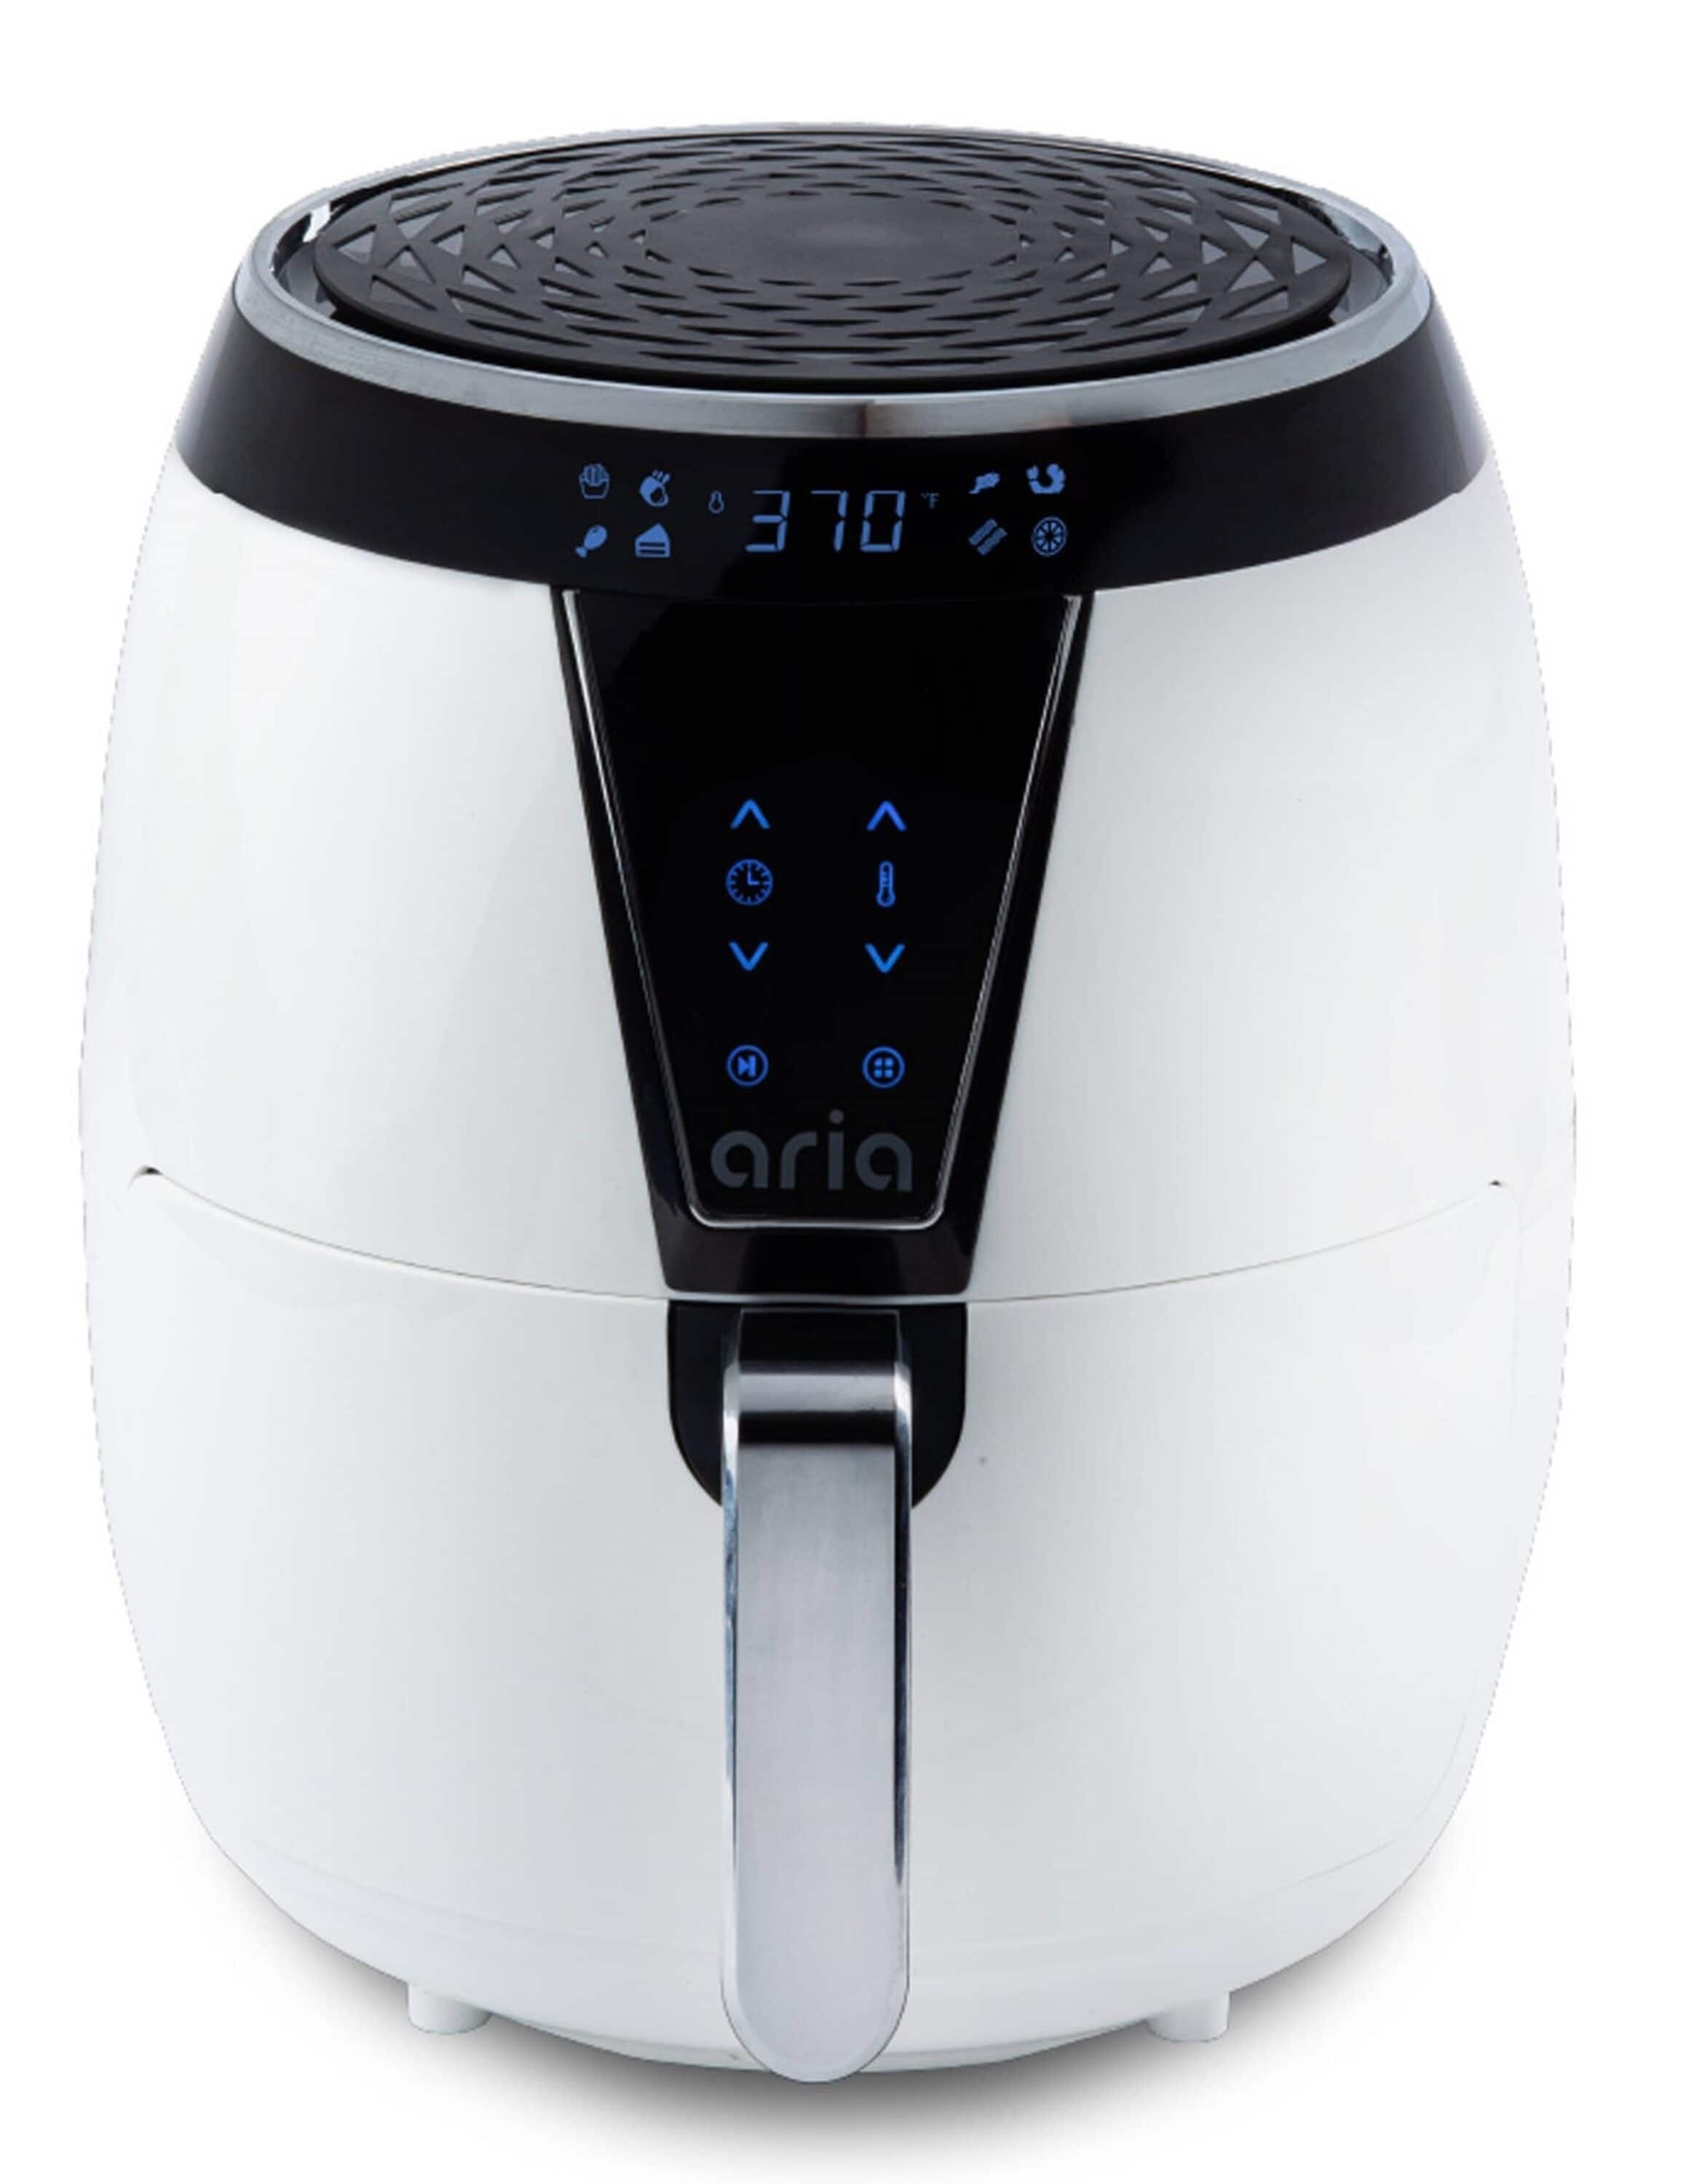  Aria Teflon-Free 3 Qt. Premium Ceramic Air Fryer with